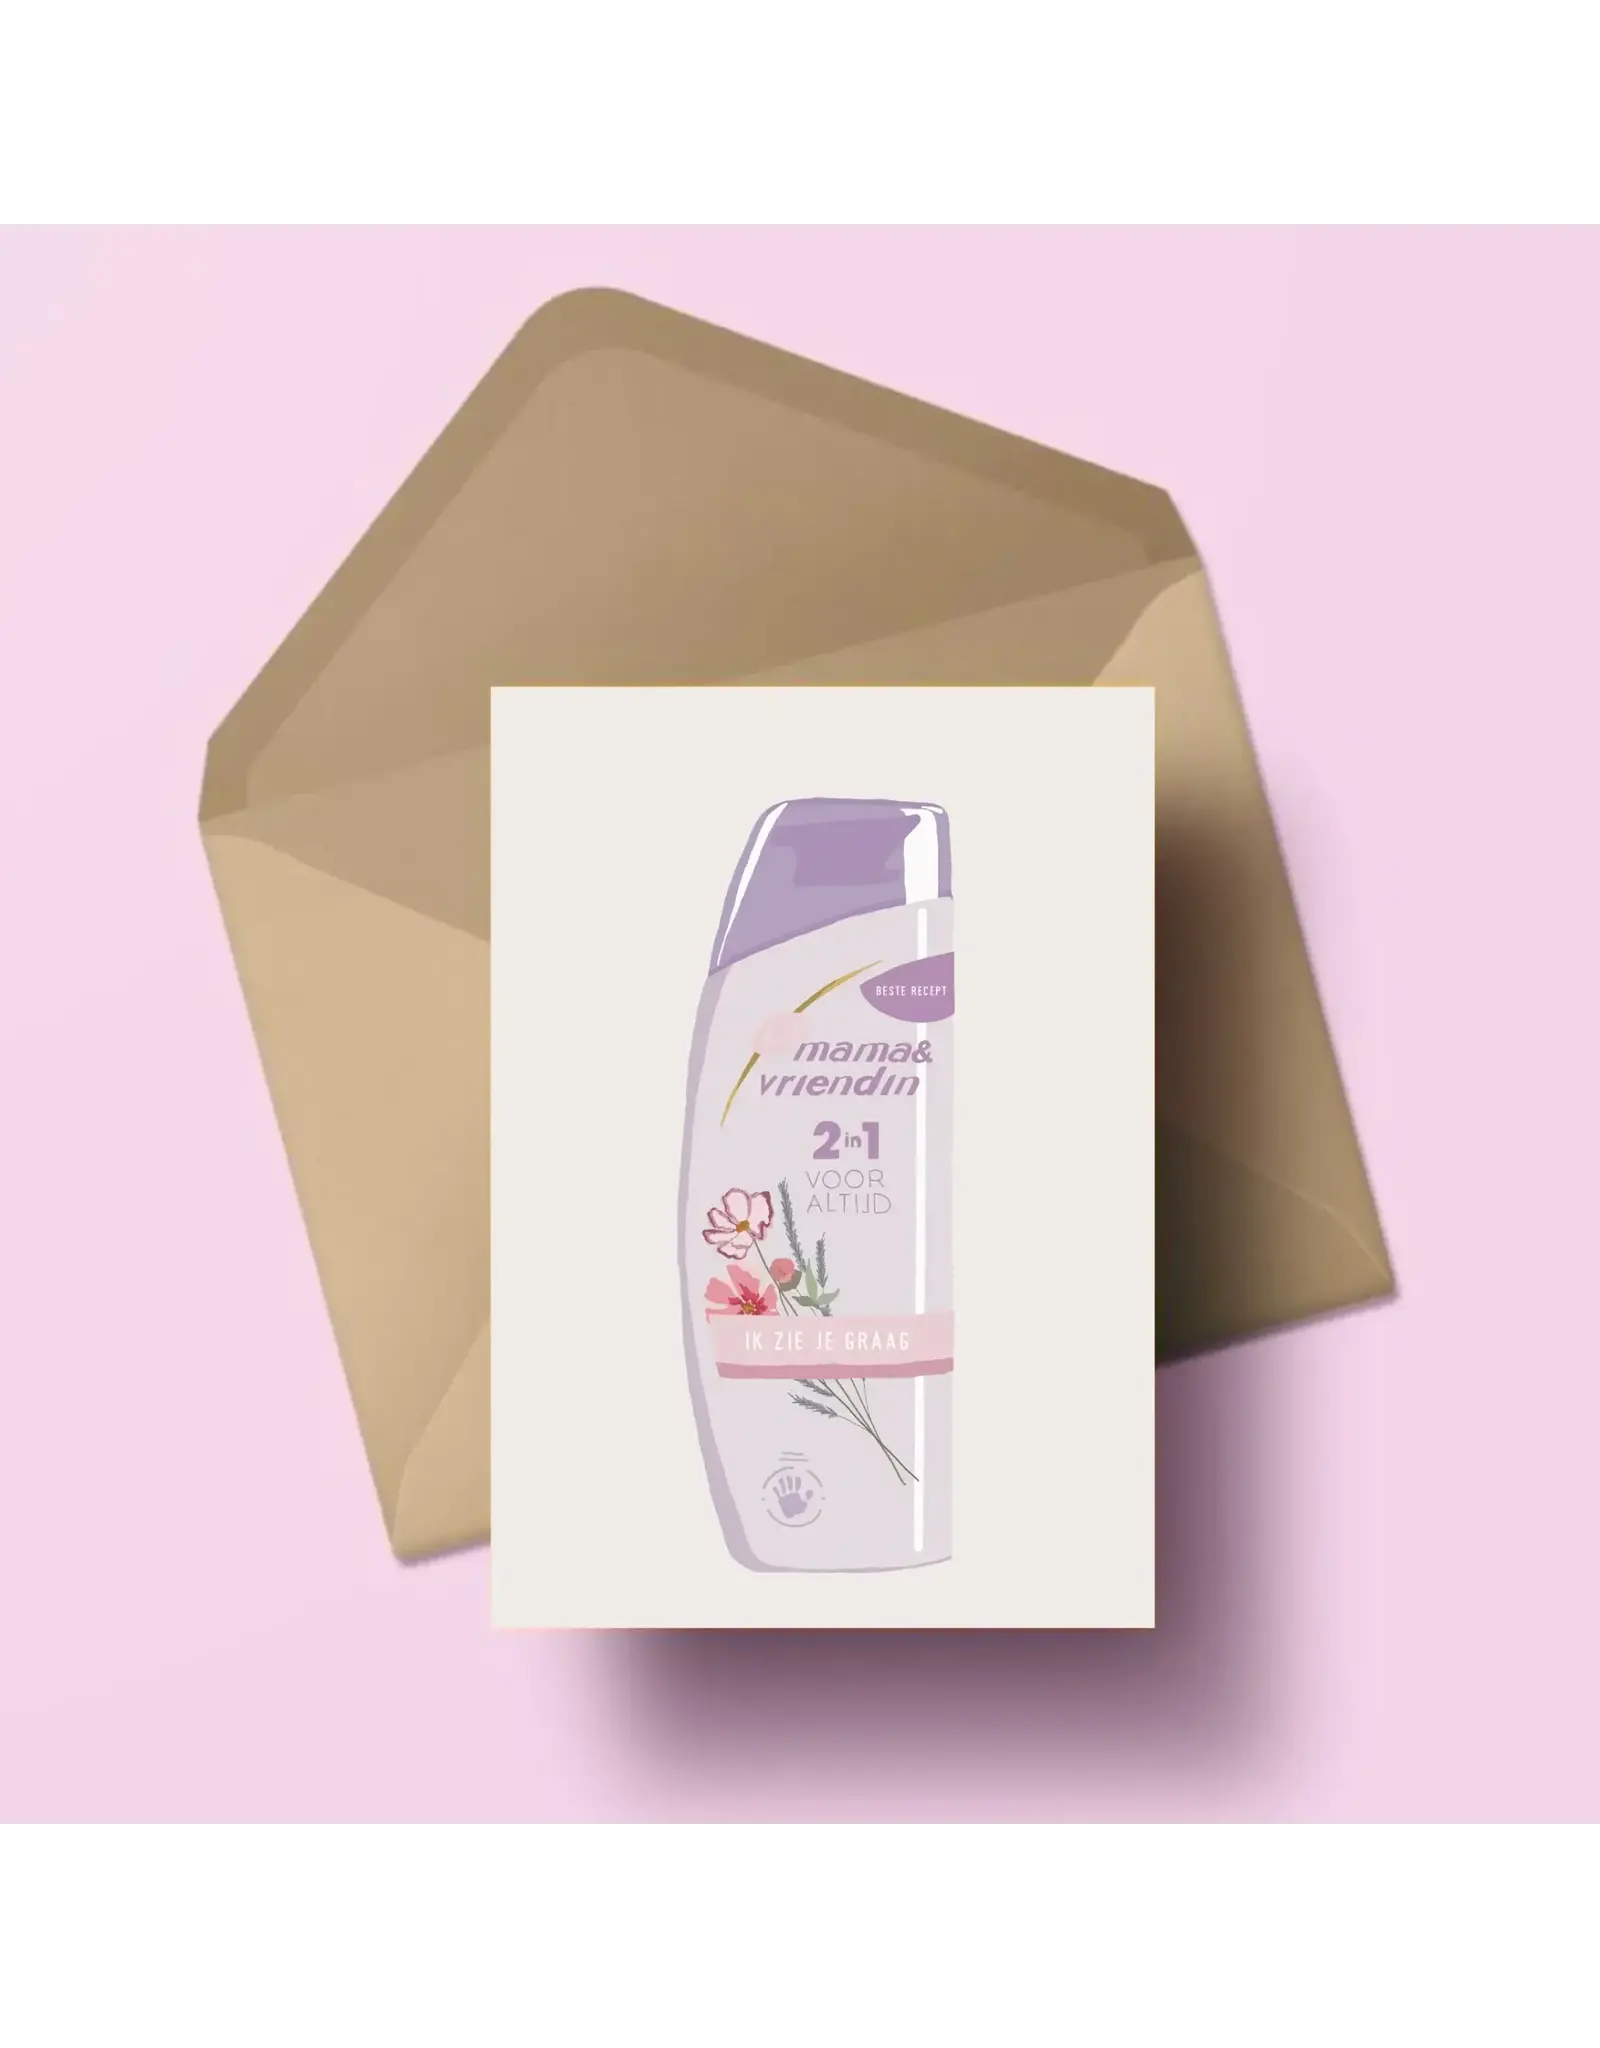 Atelier Moomade Wenskaart - Mama en vriendin 2in1 - Postkaart + Envelop